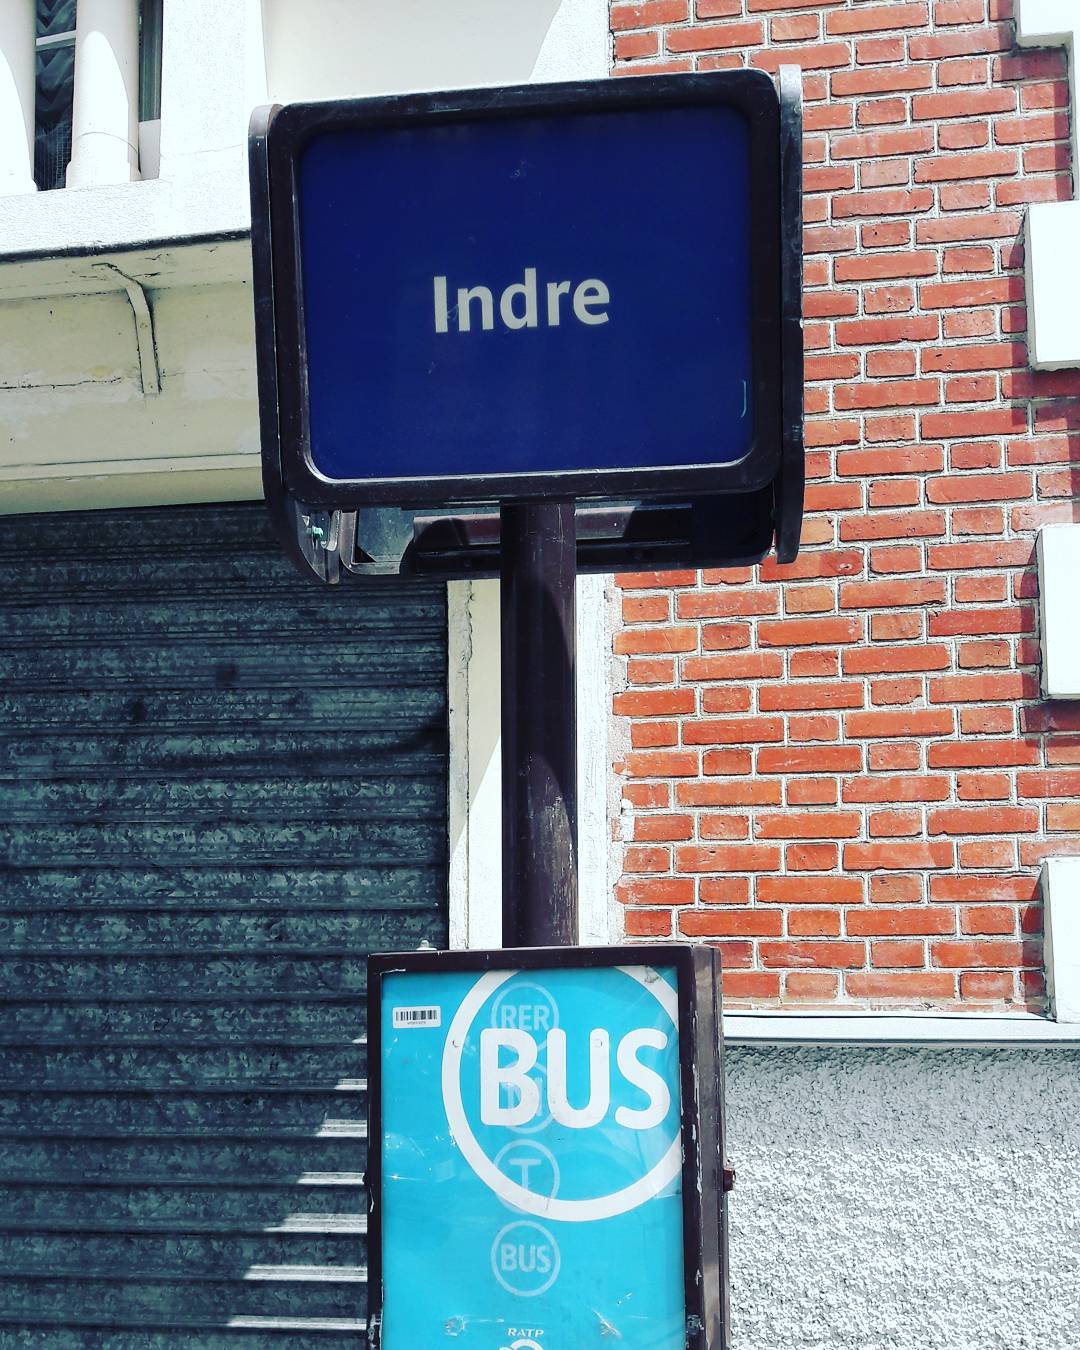 Station de bus à Paris J attends pour rentrer à la campagne #indre #paris #bus #autobus #street #city #weekend #france #instagood #picoftheday #rue #urban